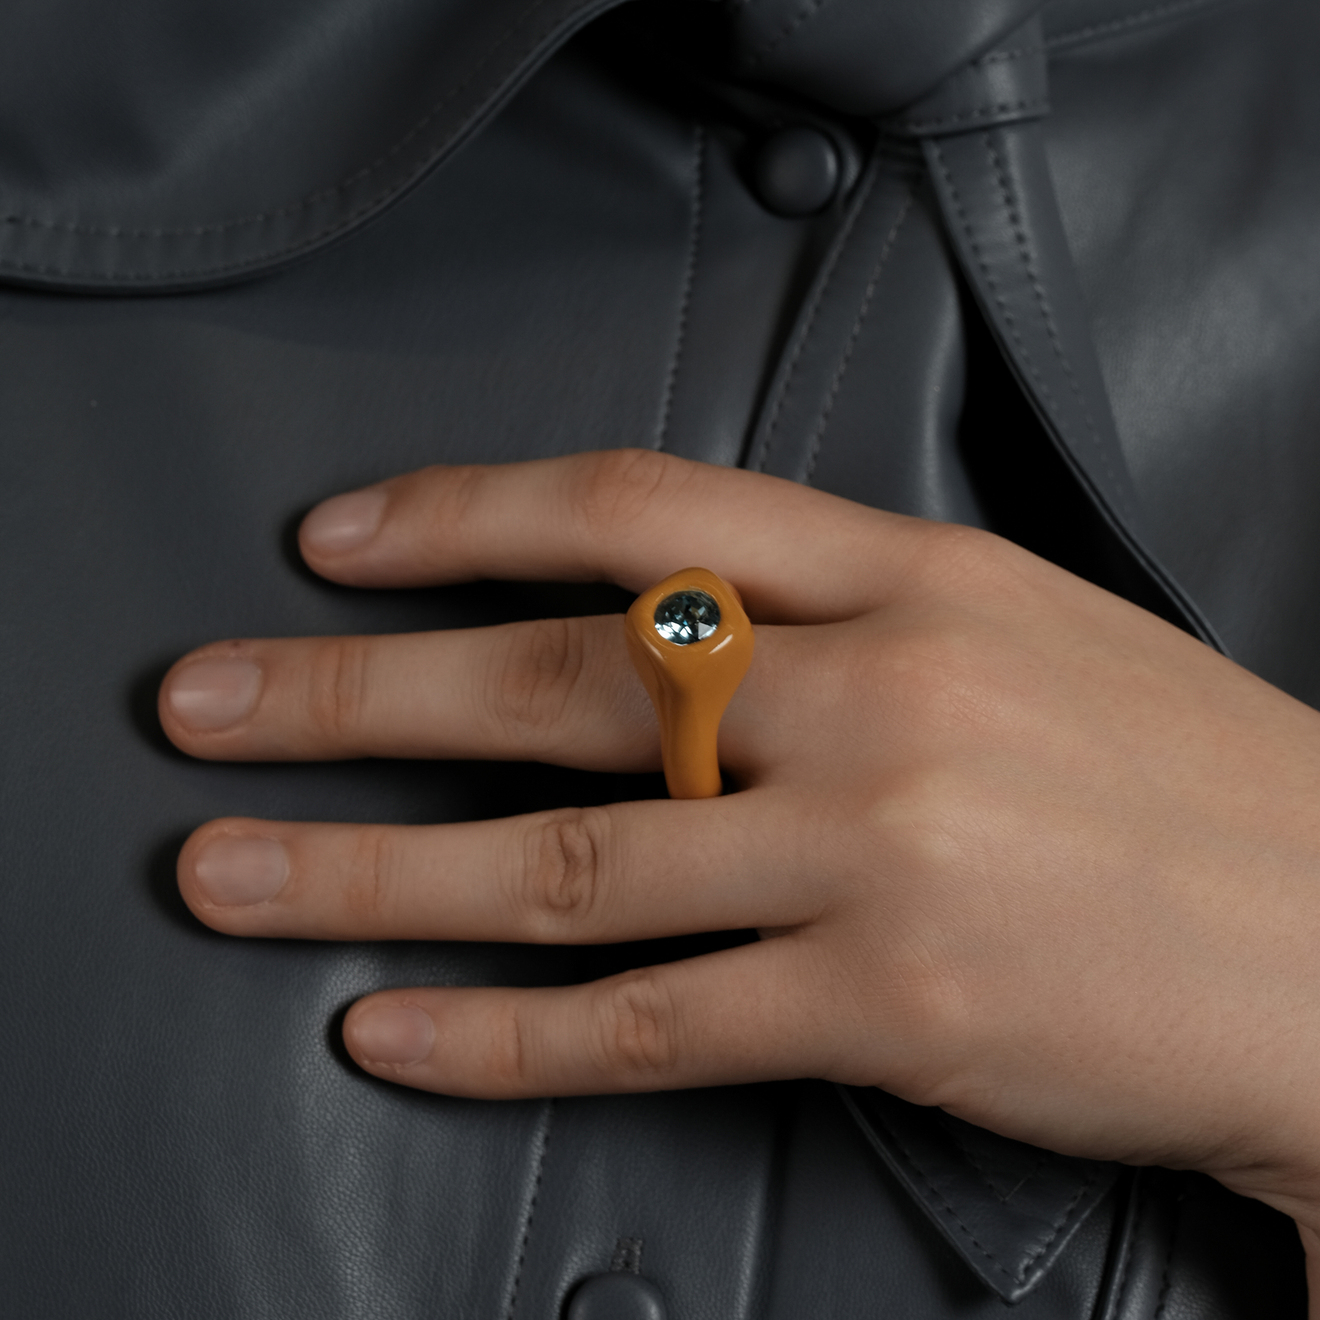 de.formee Оранжевое кольцо с голубым кристаллом aqua золотистая цепочка с кулоном с голубым кристаллом